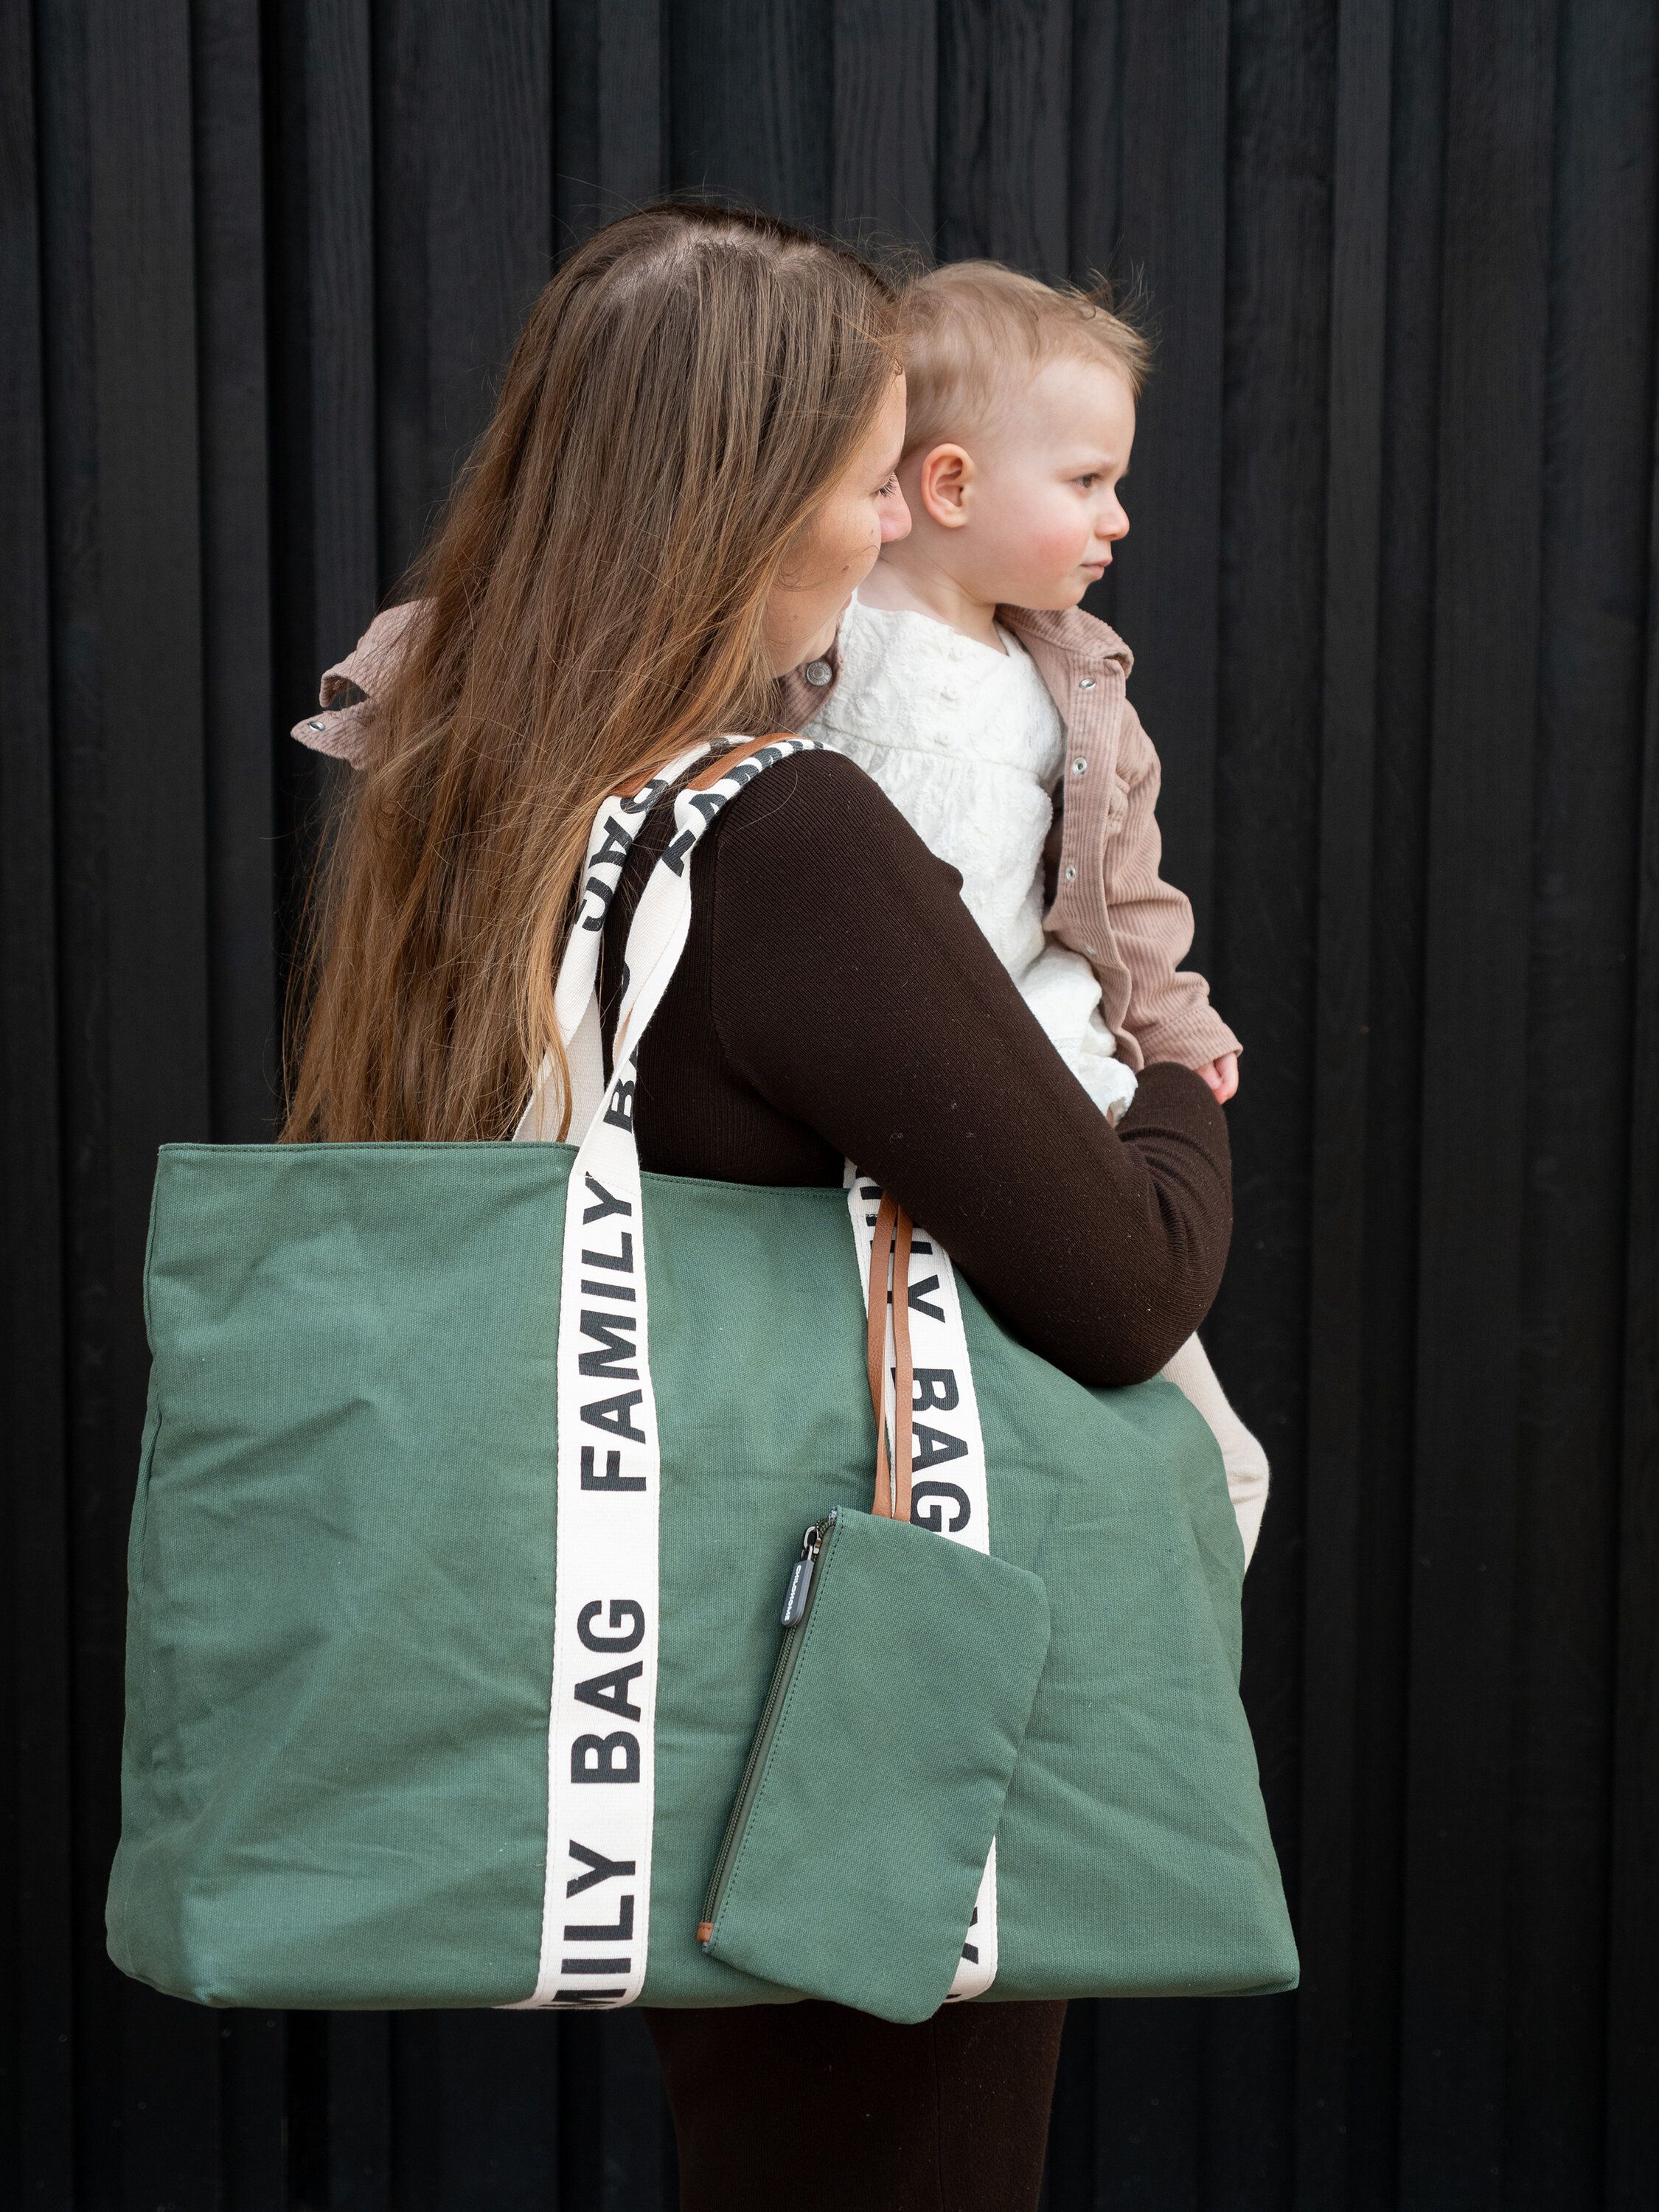 Sac à langer Family Bag CHILDHOME - vert clair uni avec decor